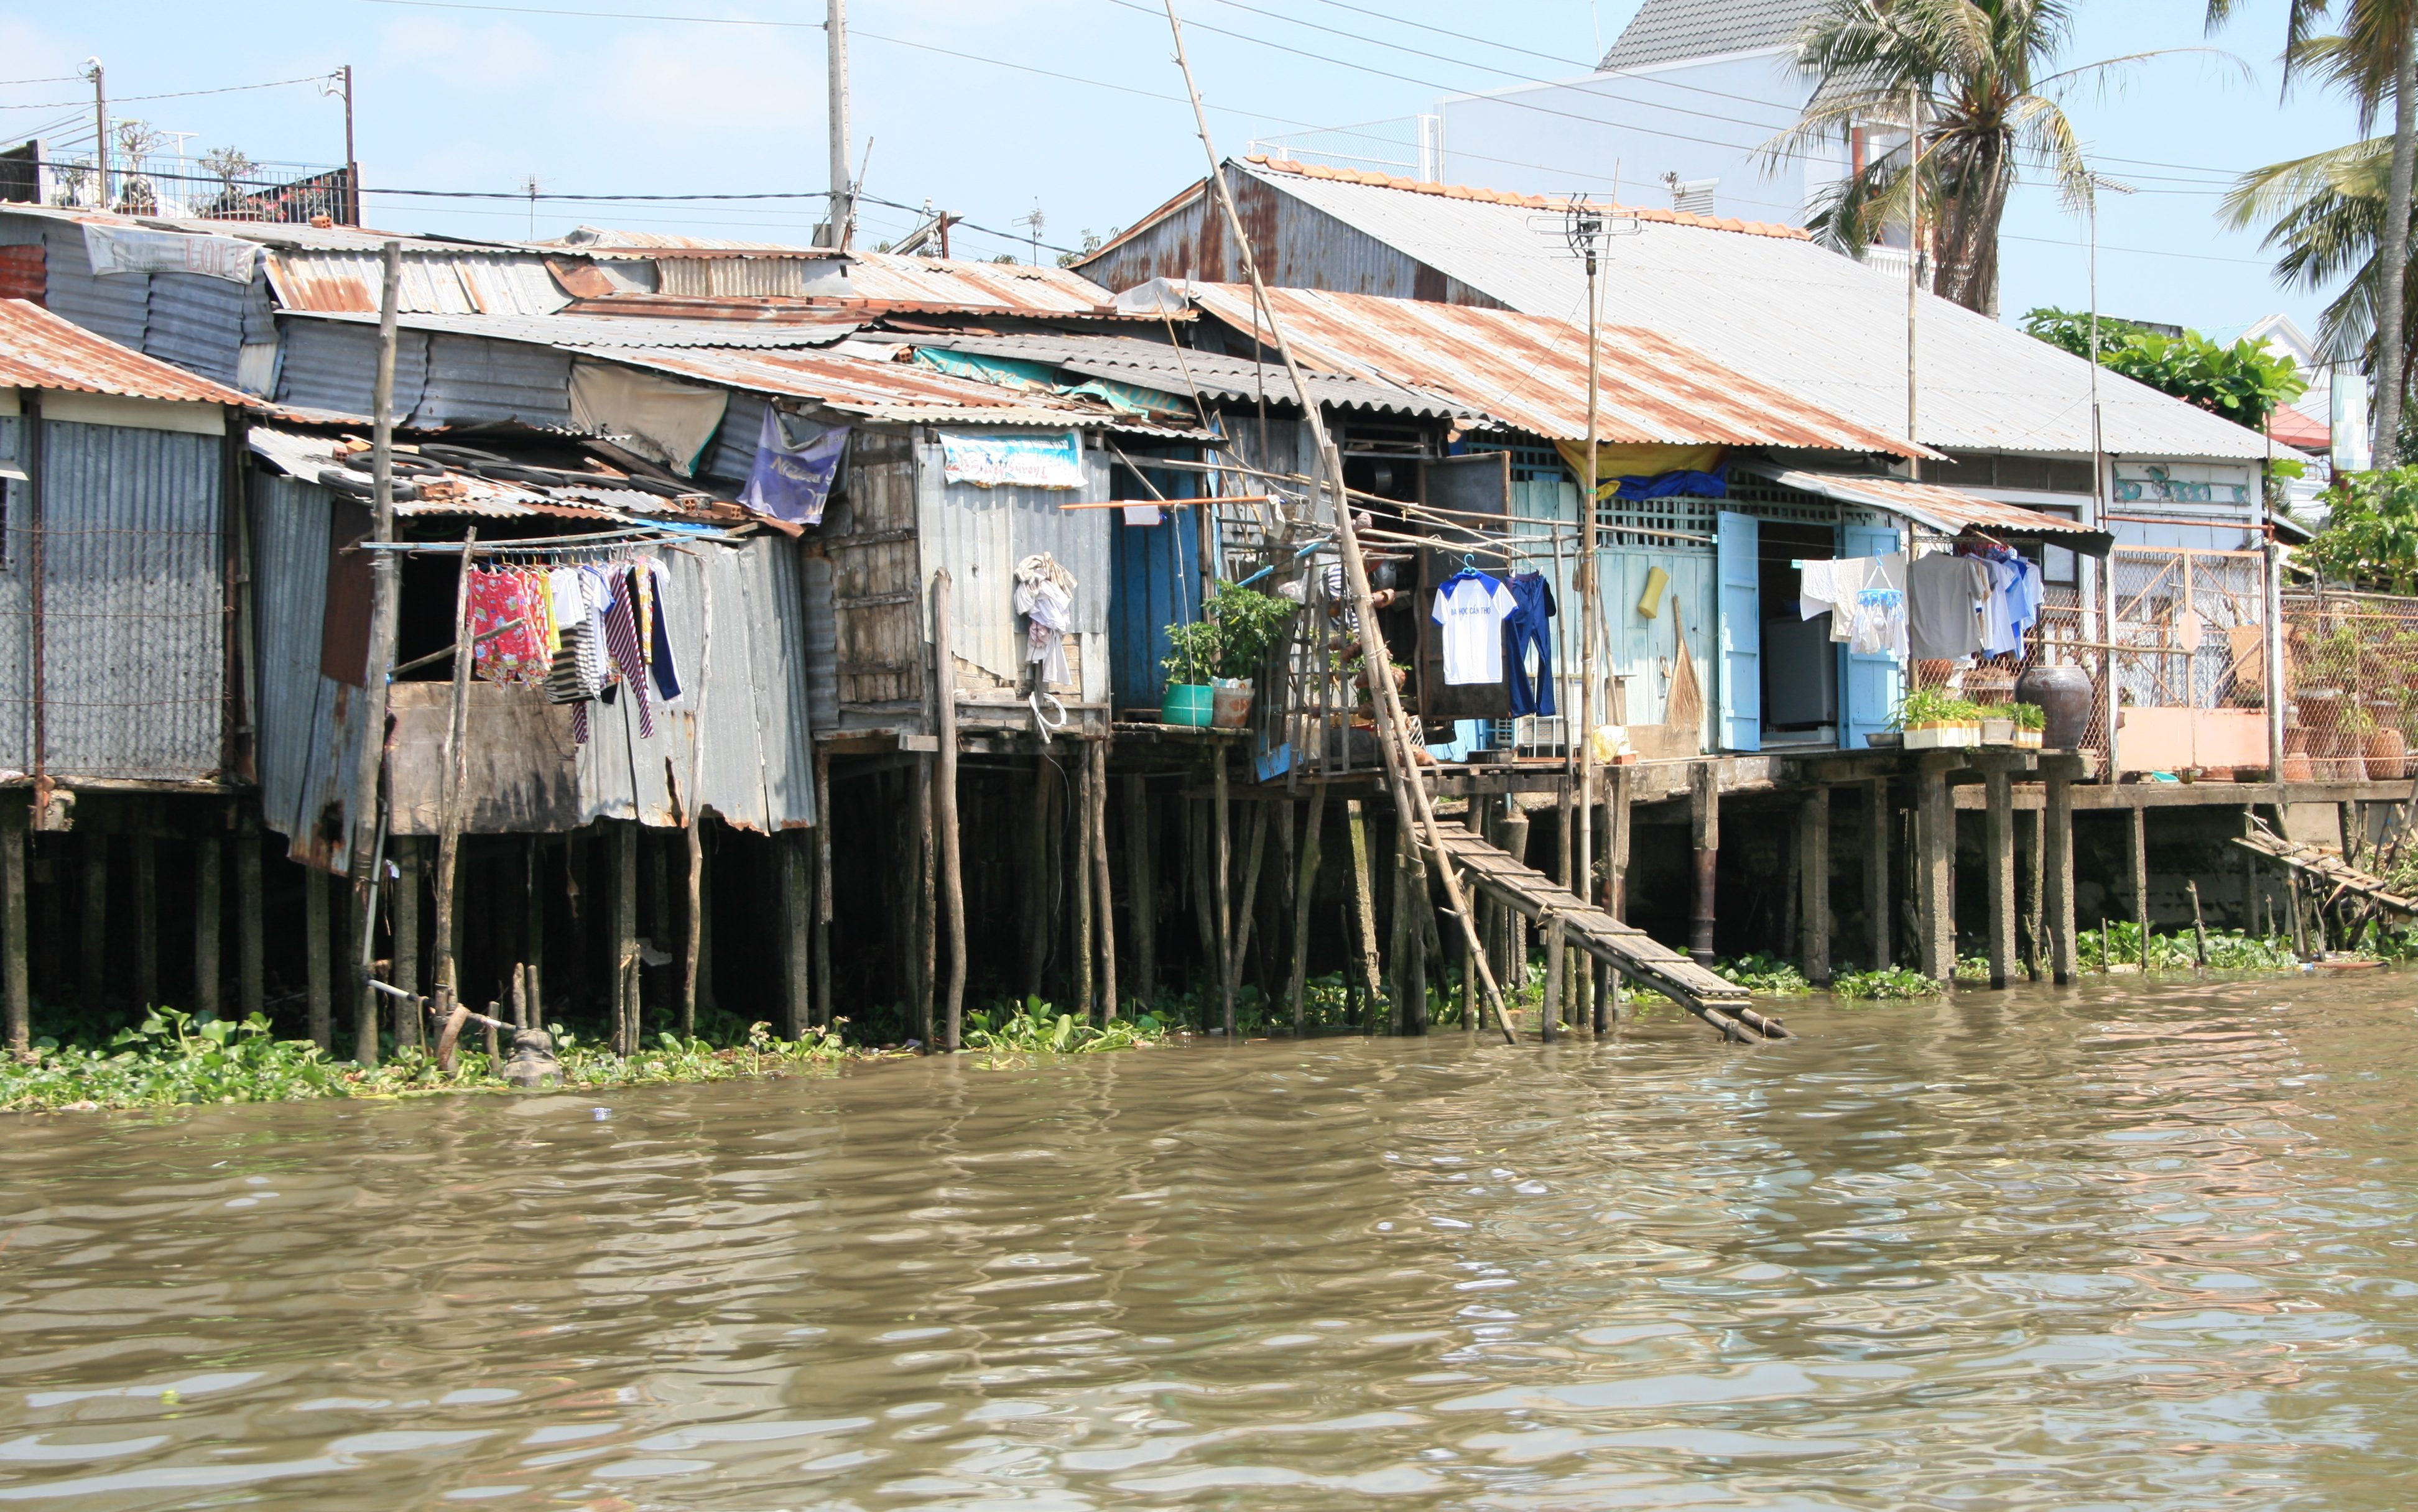 Stilt houses over water near floating market in the Mekong Delta